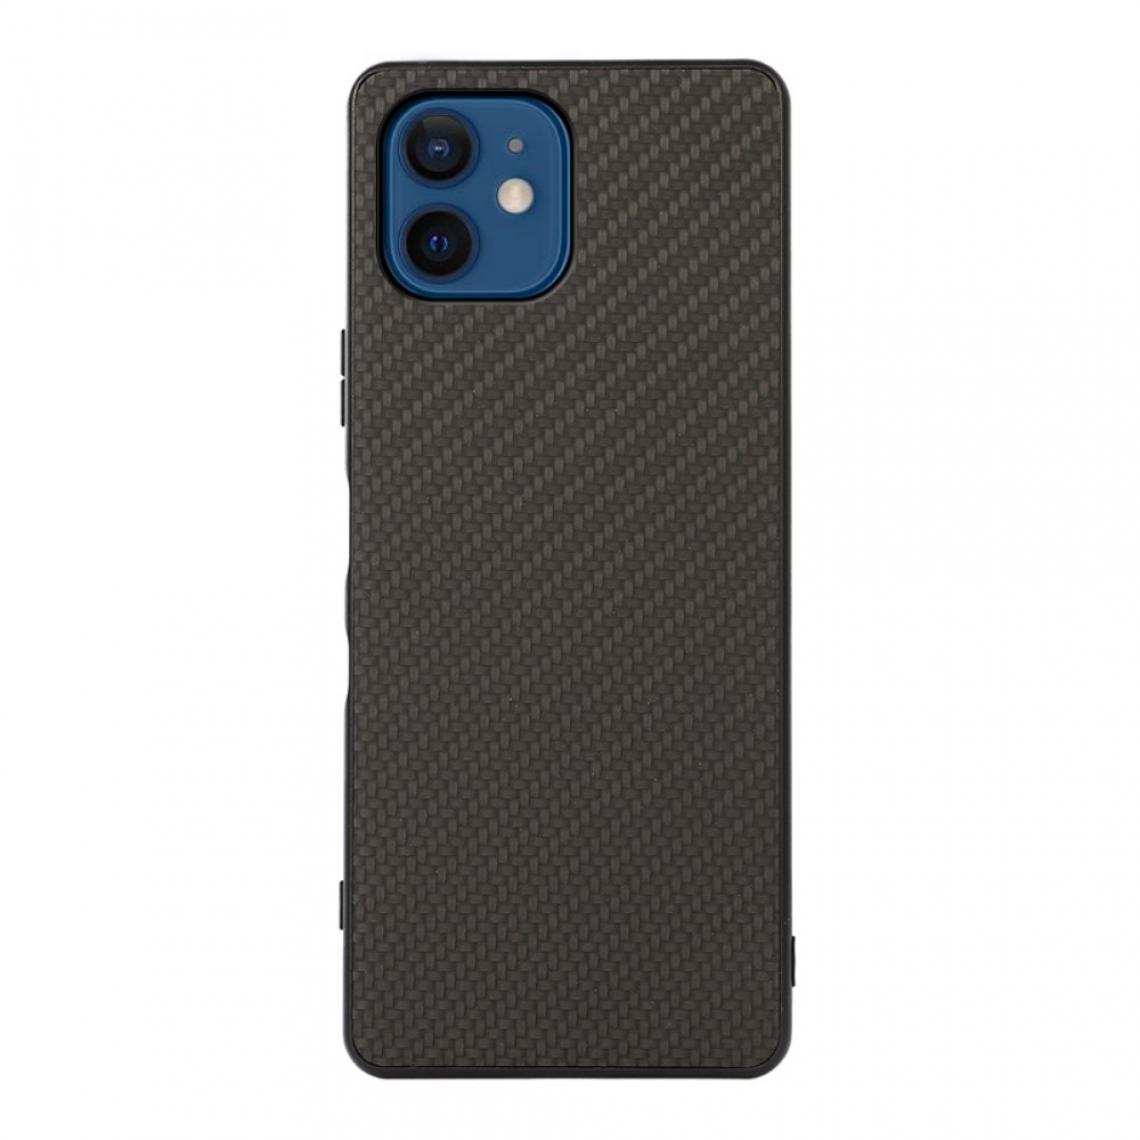 Other - Coque en TPU + PU Texture de fibre de carbone noir pour votre Apple iPhone 12 Mini - Coque, étui smartphone